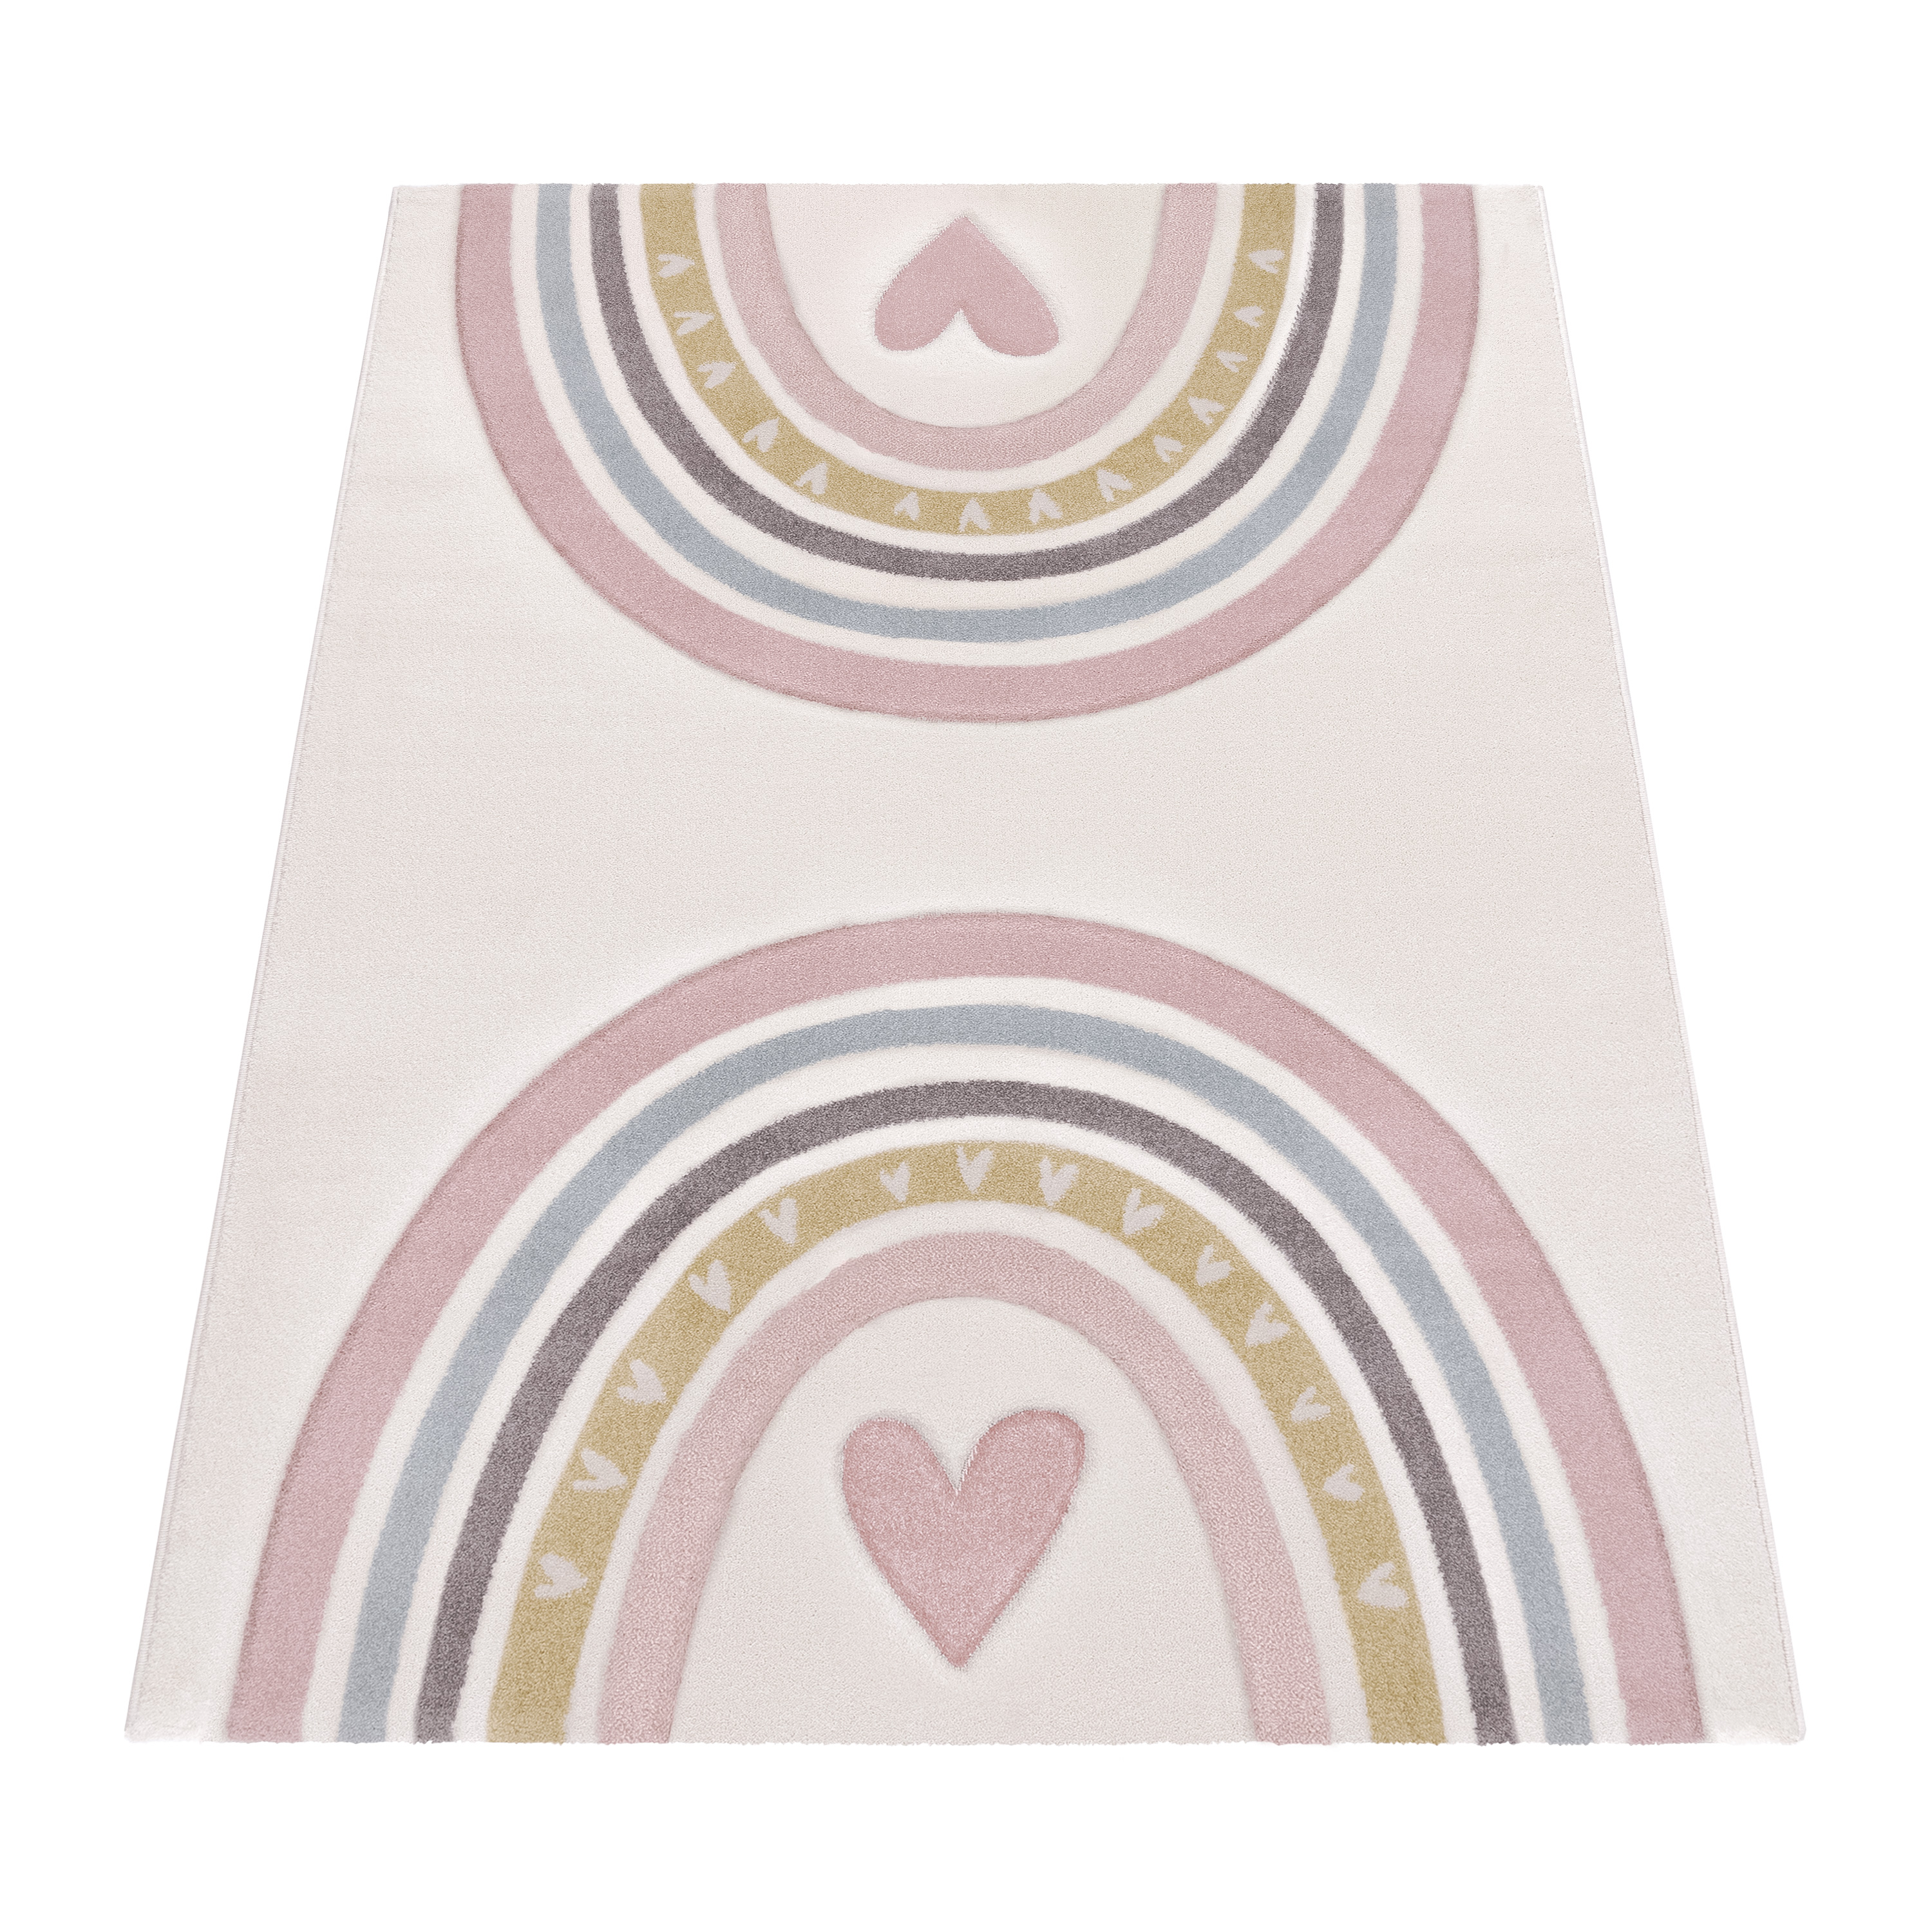 Kinderteppich Regenbogen Muster Mit Herz Pink Kind